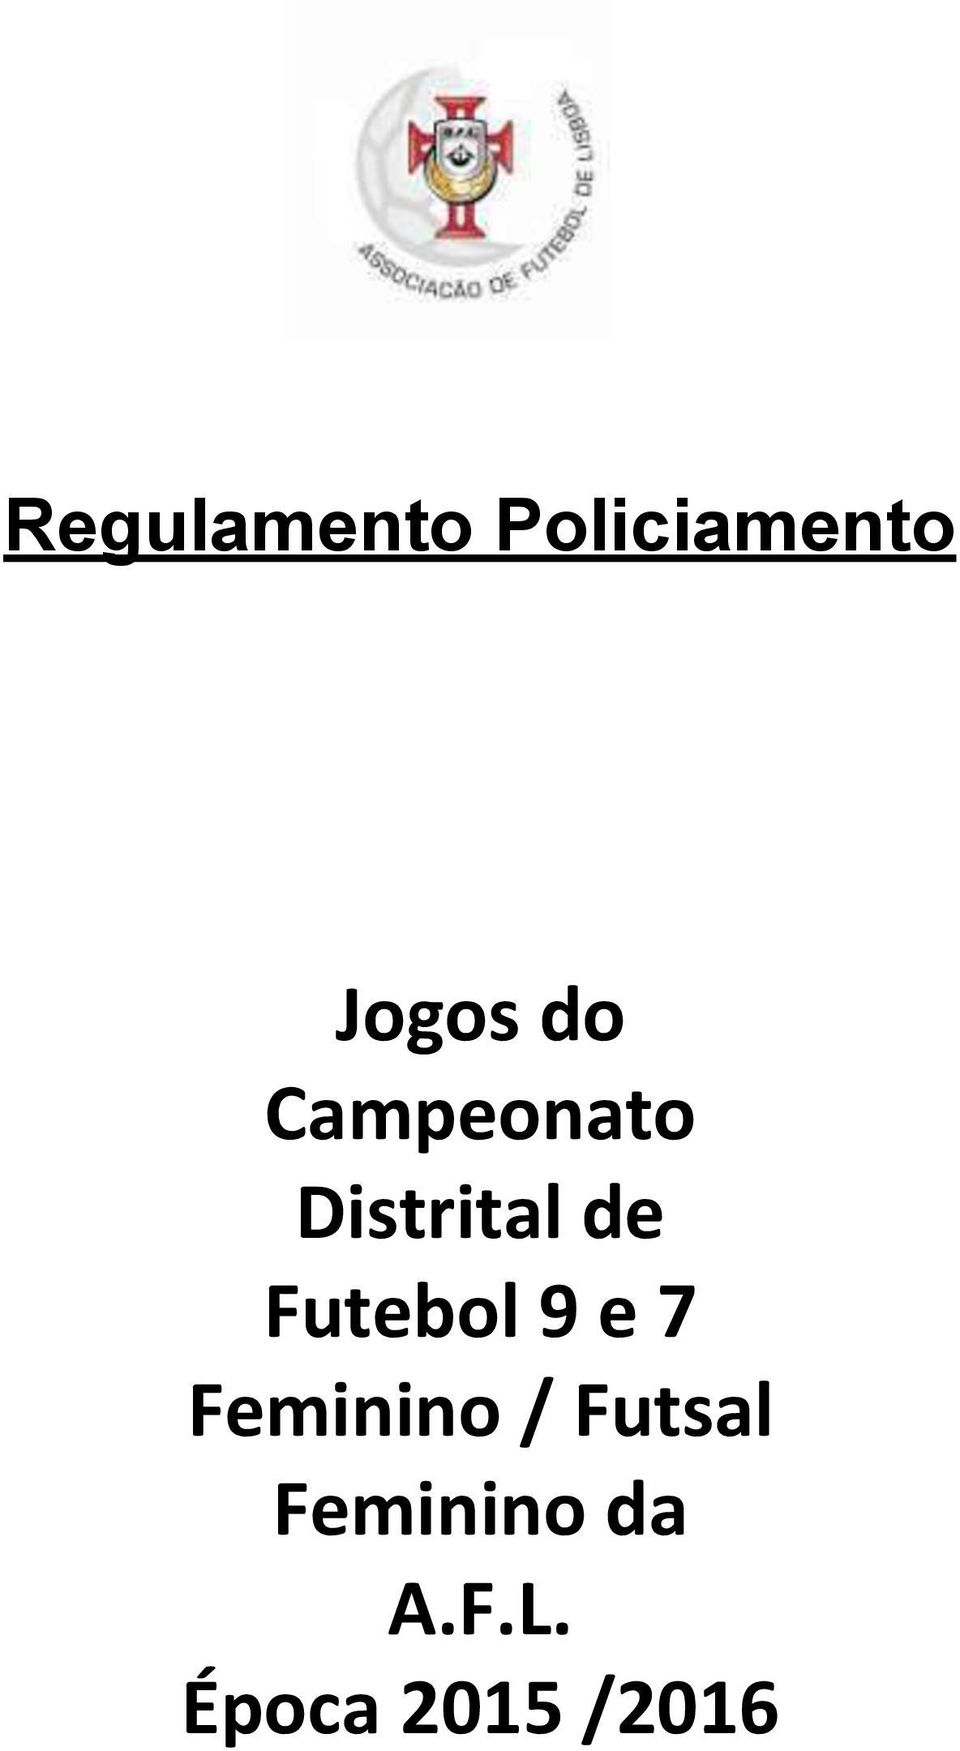 Futebol 9 e 7 Feminino / Futsal